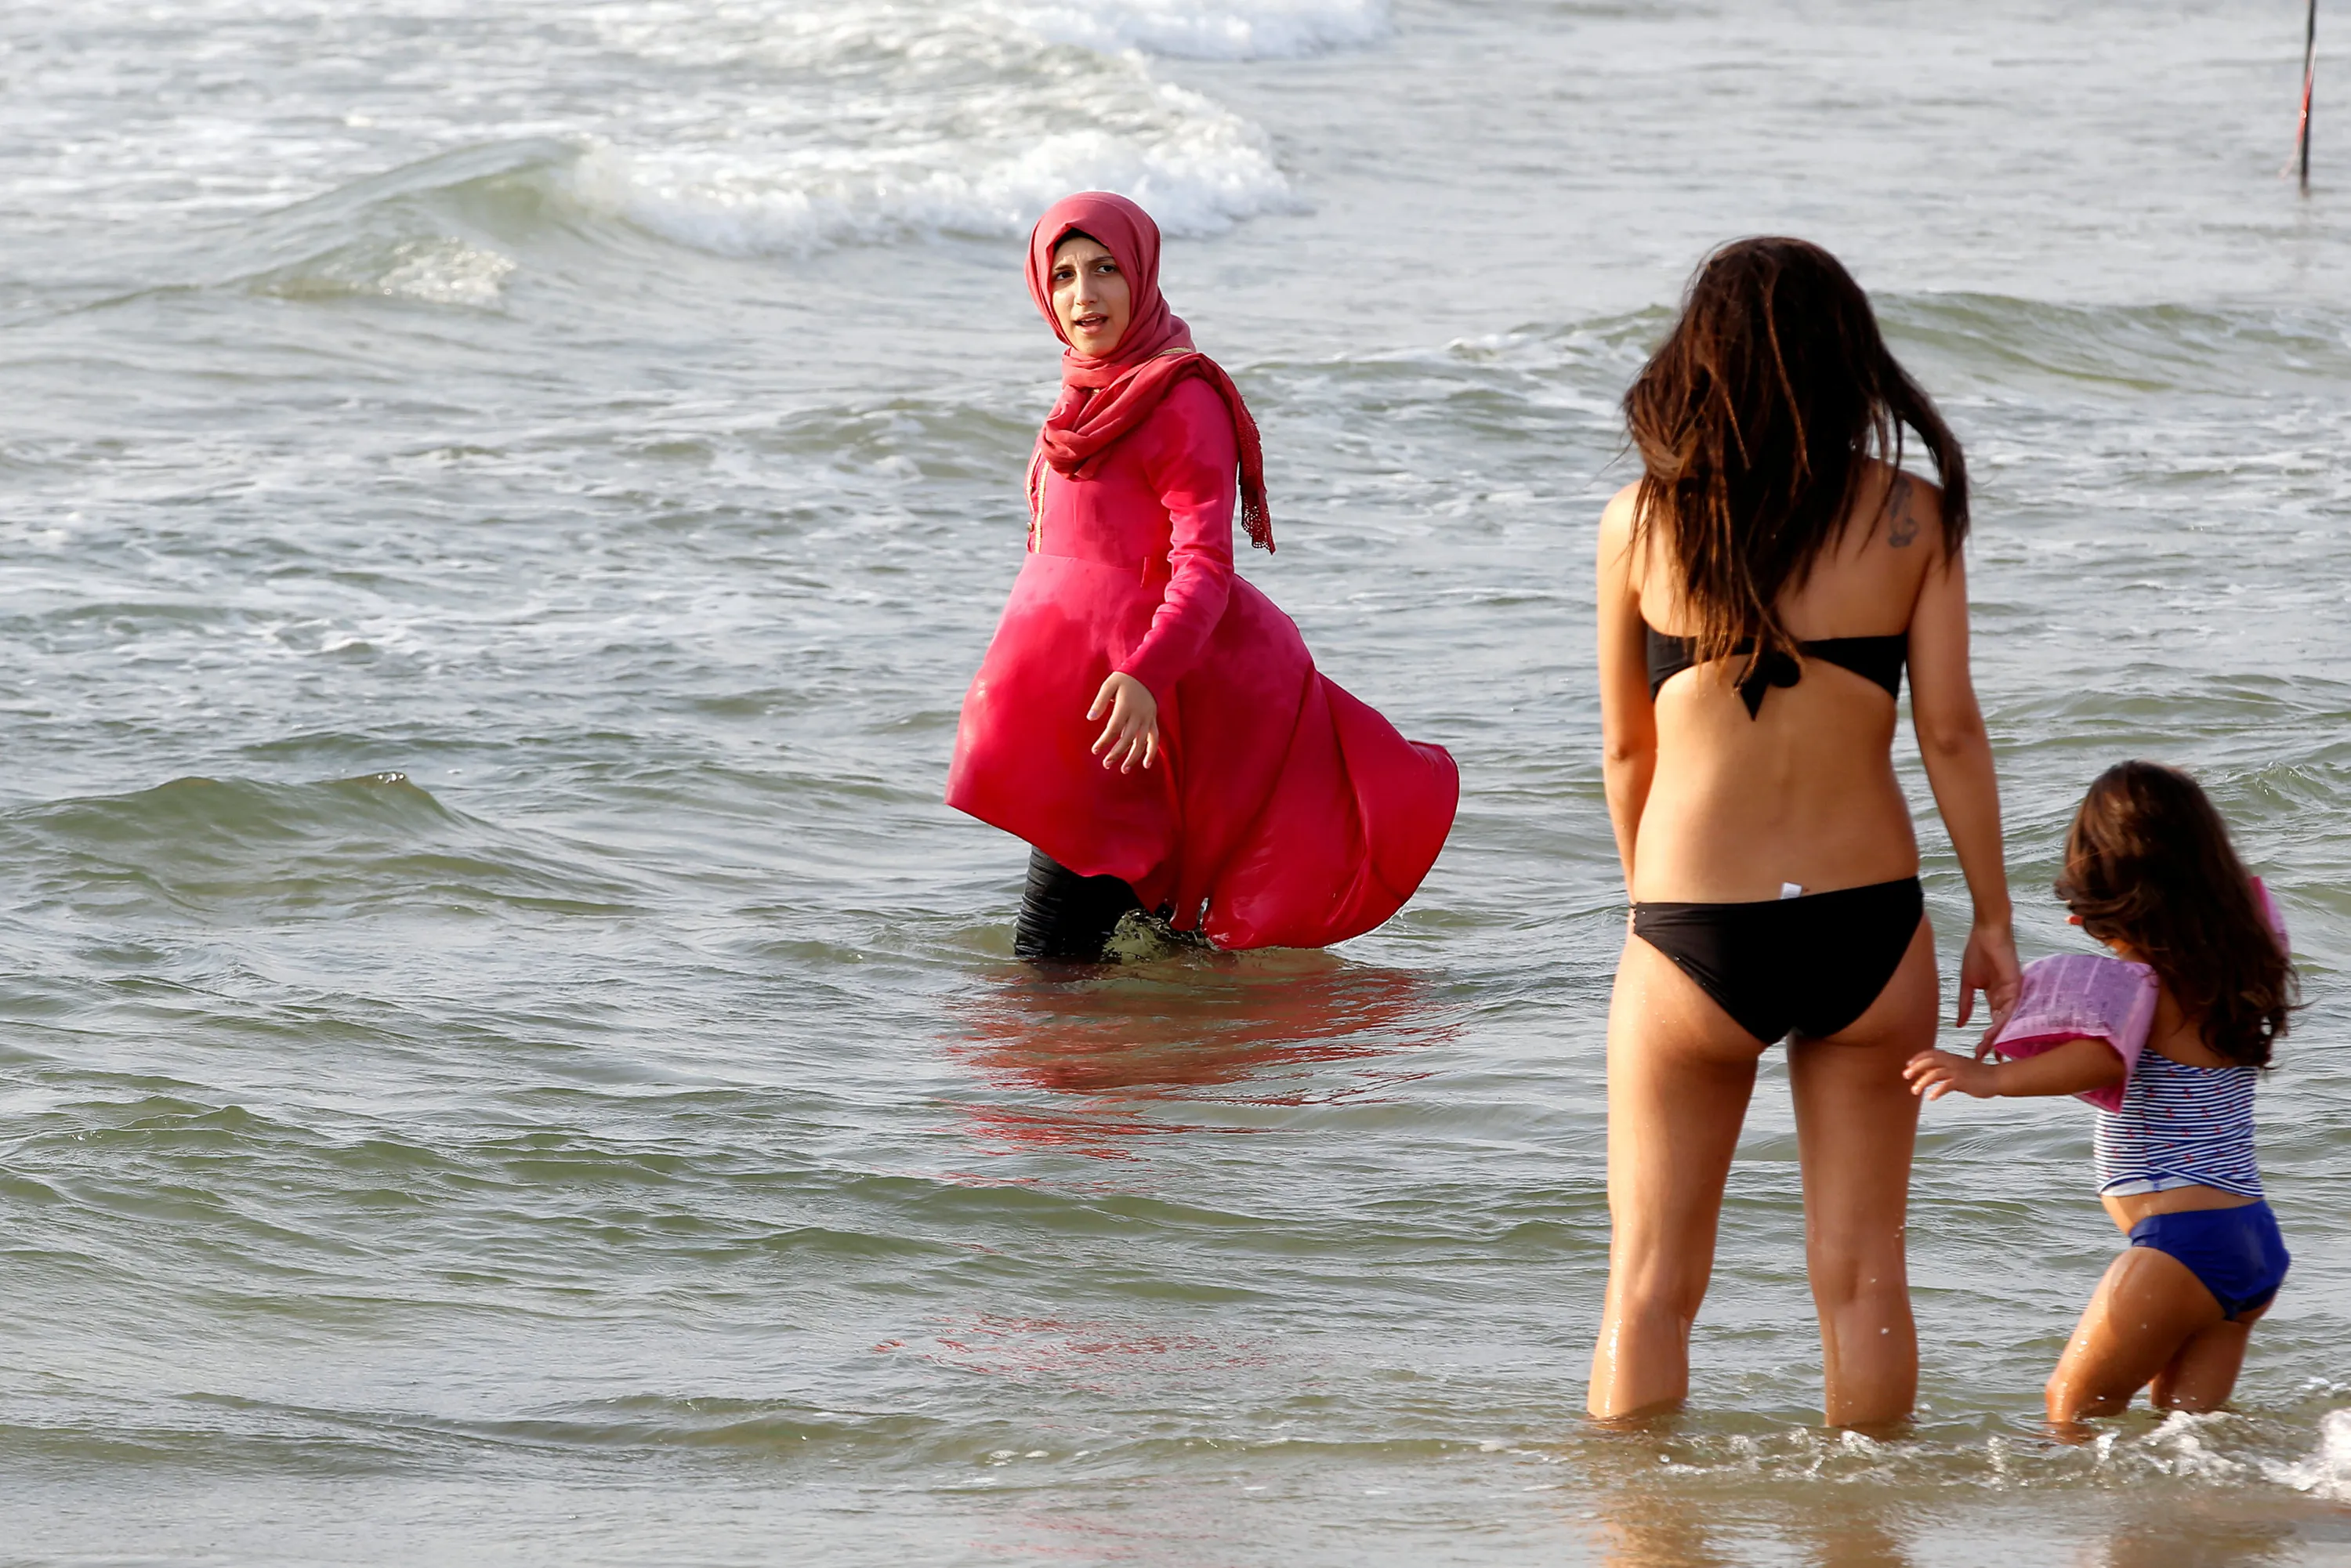 Турция когда можно купаться в море. Буркини Иран. Арабские женщины на пляже. Мусульманка на море. Мусульманки купаются в море.